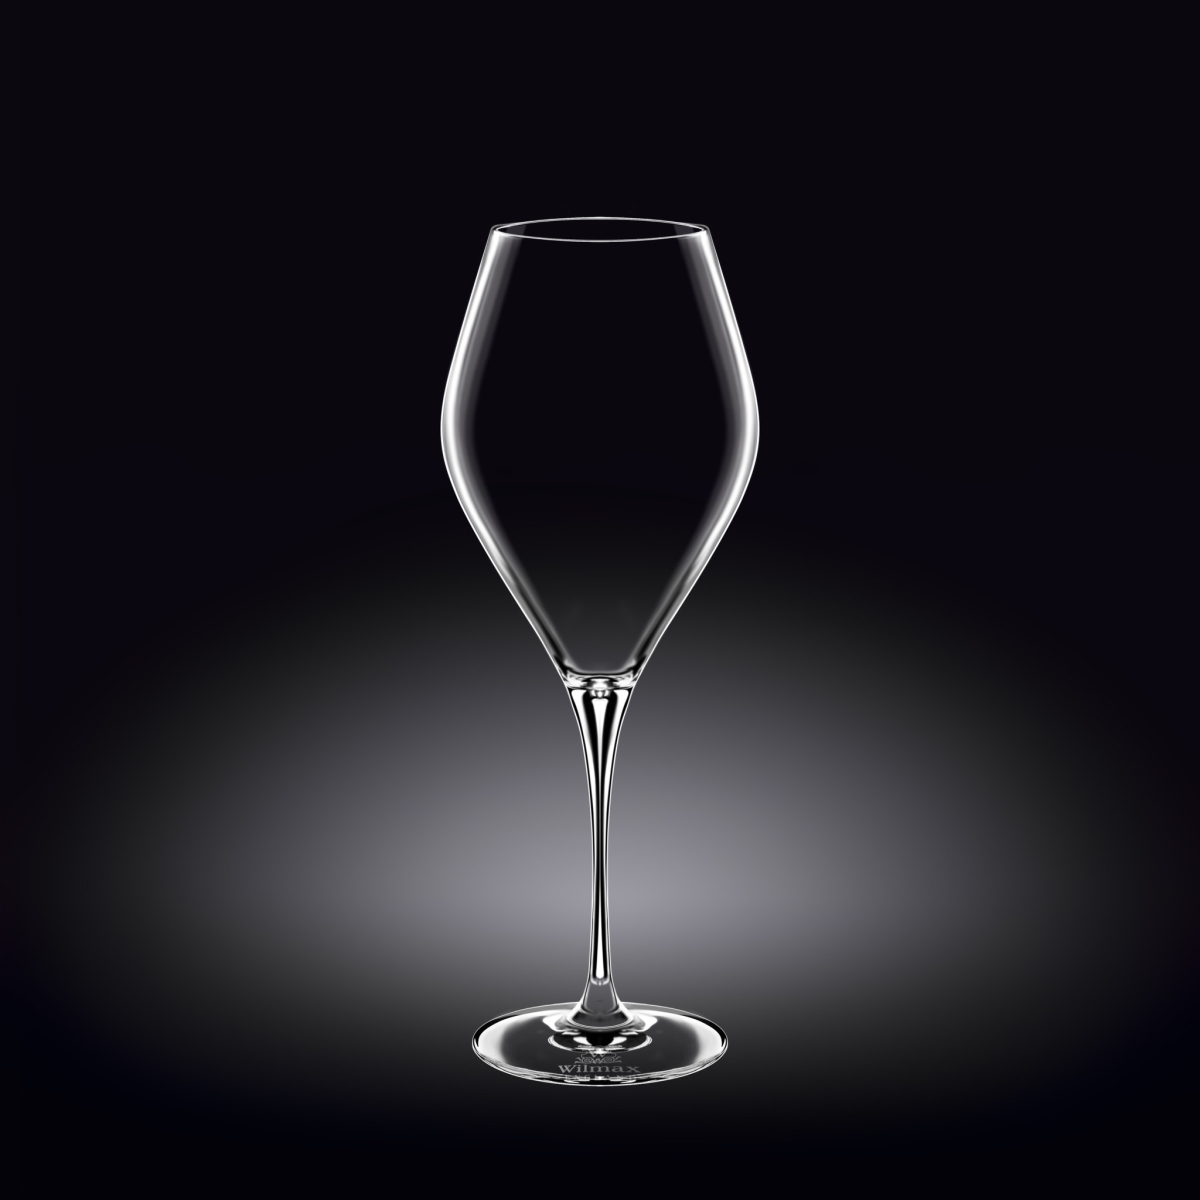 Wl-888046-2c Wine Glass 19 Oz. 540 Ml. Set Of 2 In Colour Box